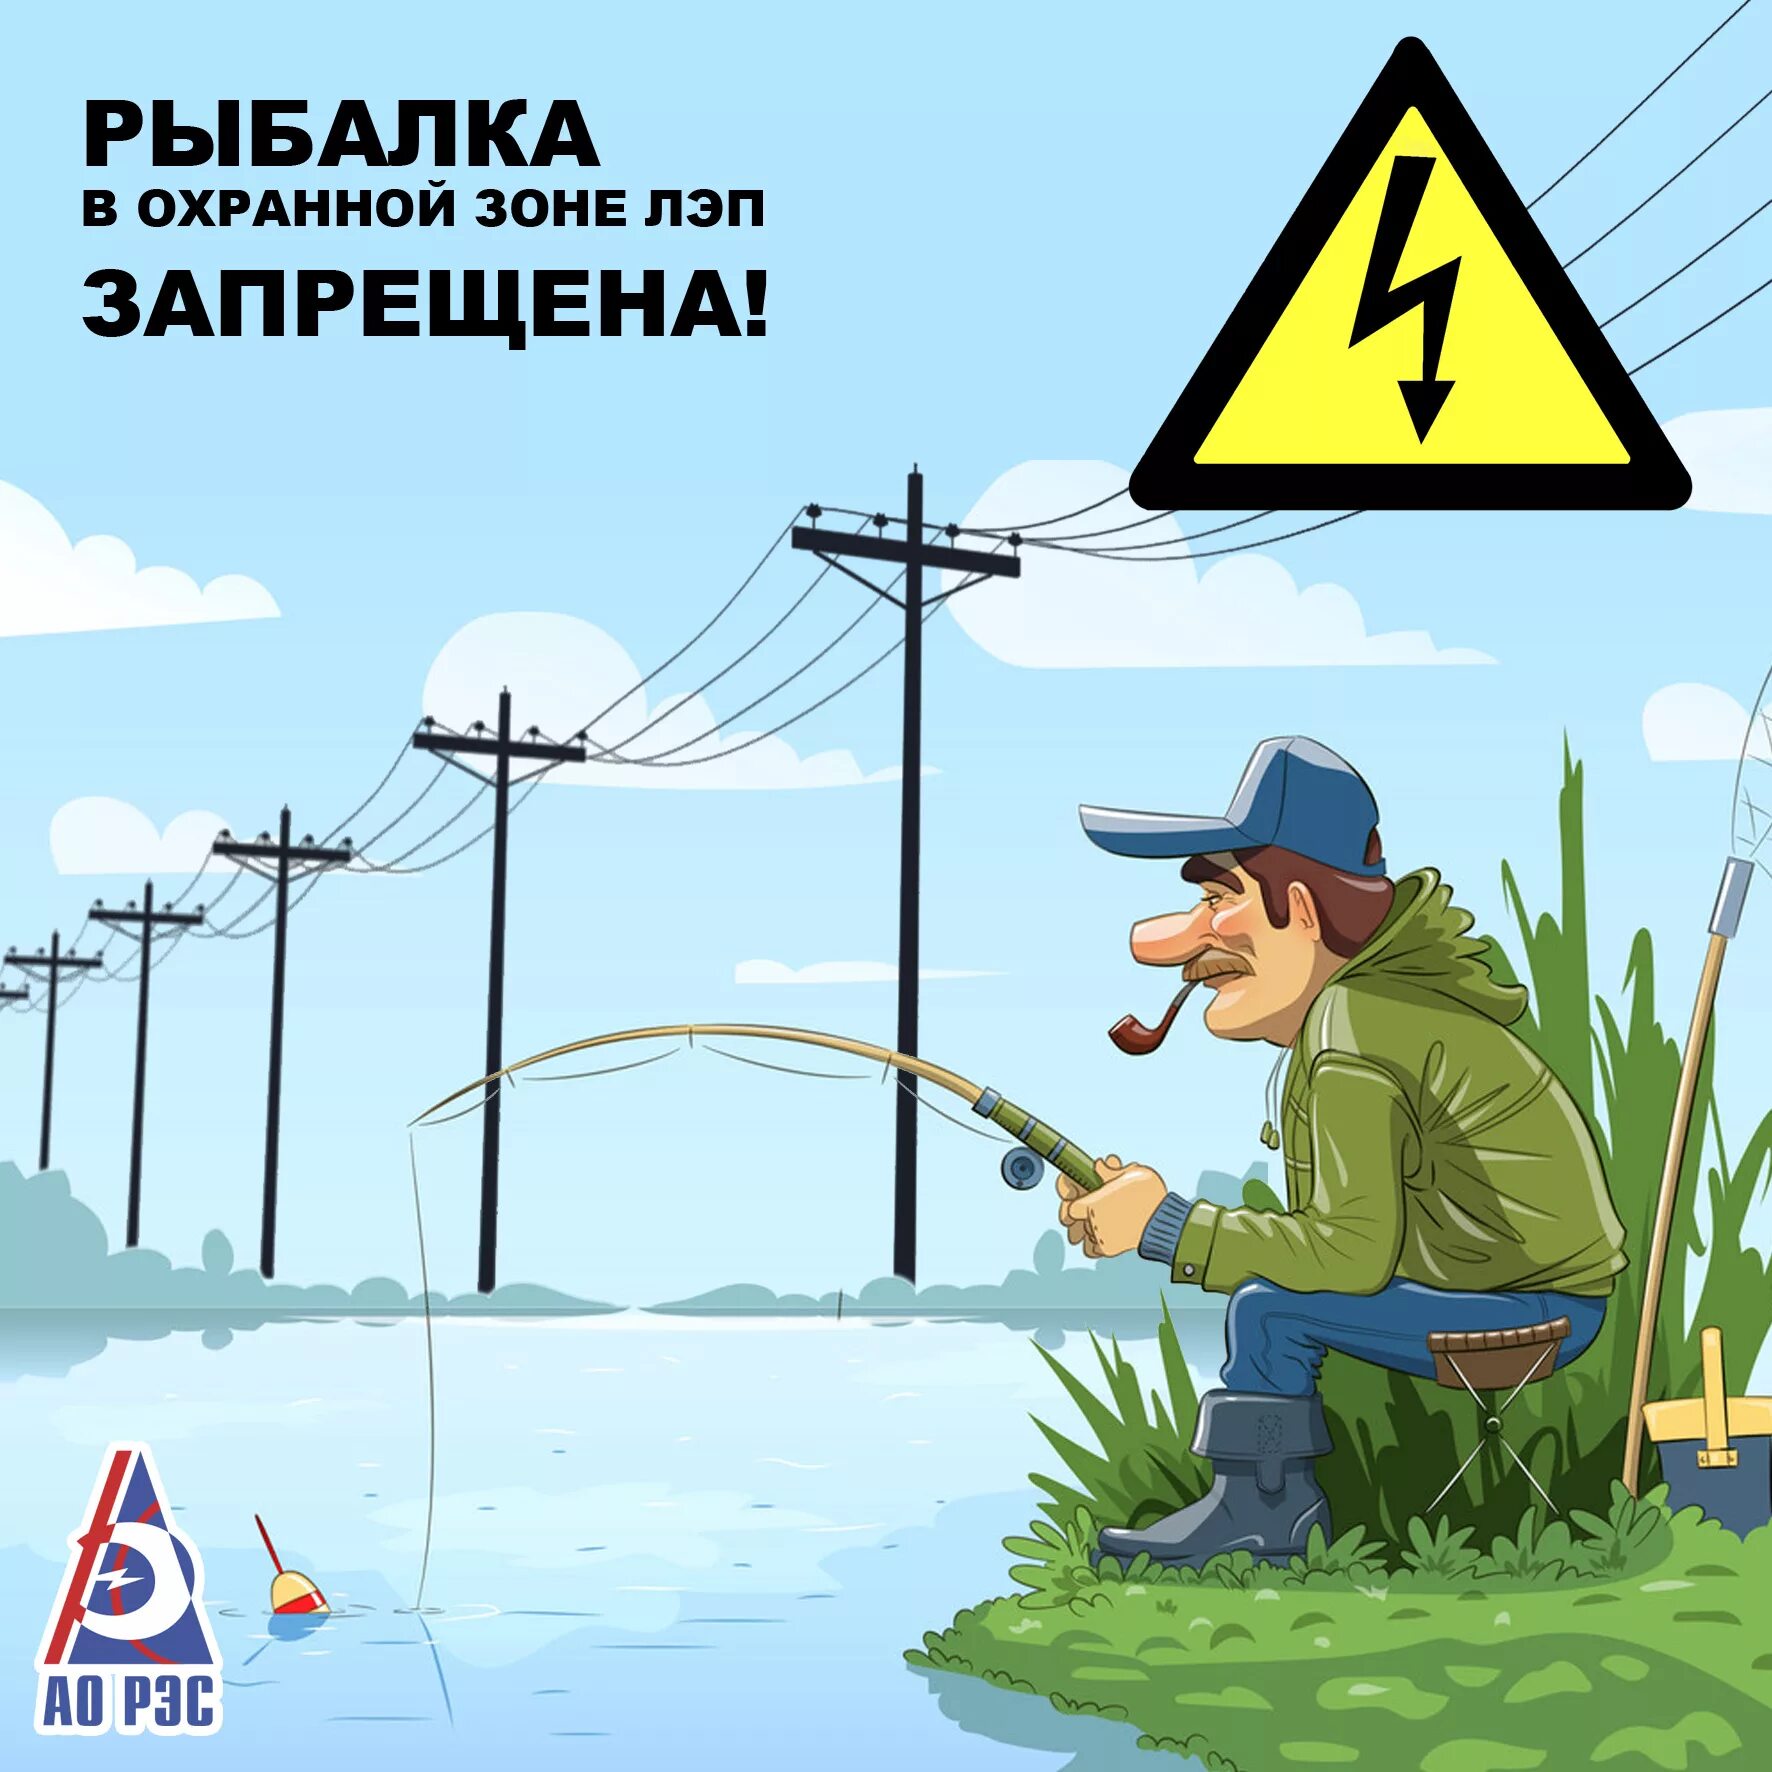 Рыбалка вблизи ЛЭП. Опасно рыбачить под линиями электропередачи. Рыбалка в охранной зоне ЛЭП. Нельзя ловить рыбу вблизи линий электропередачи.